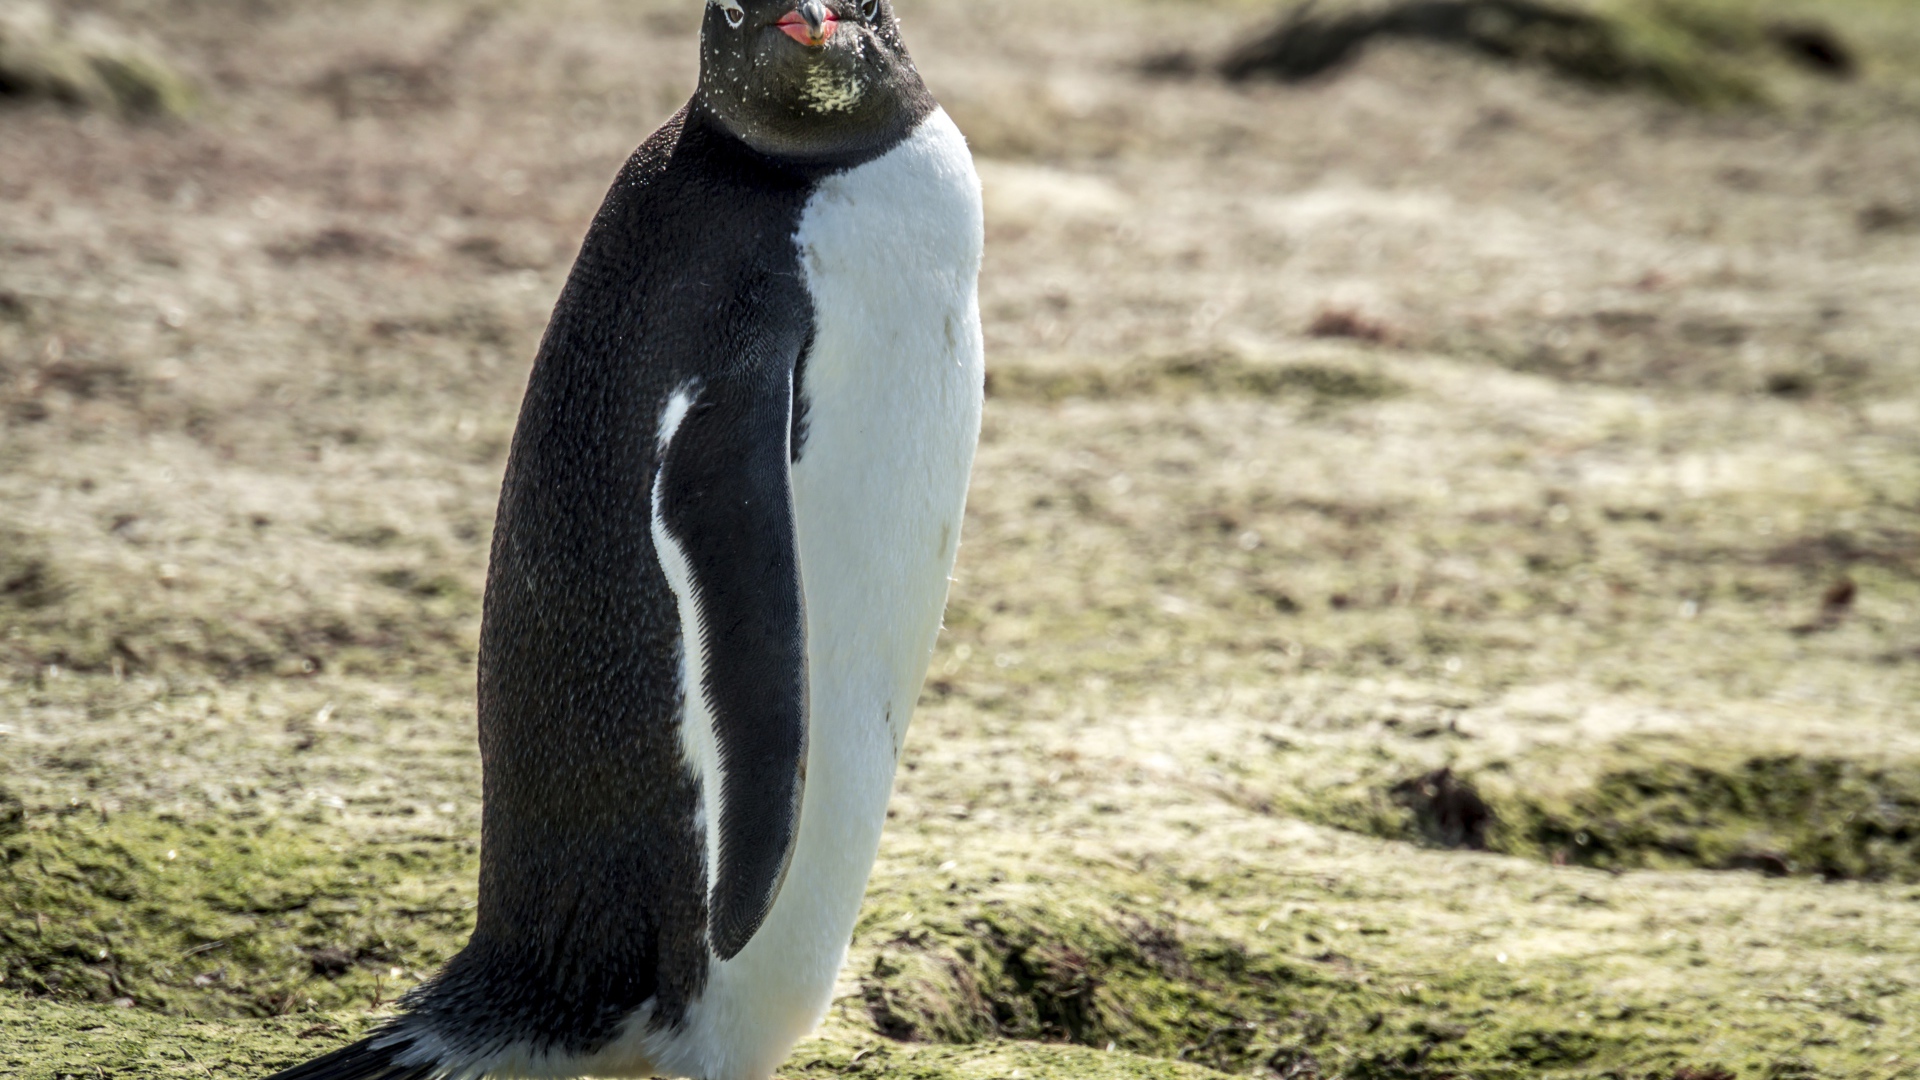 Большой пингвин стоит на земле 